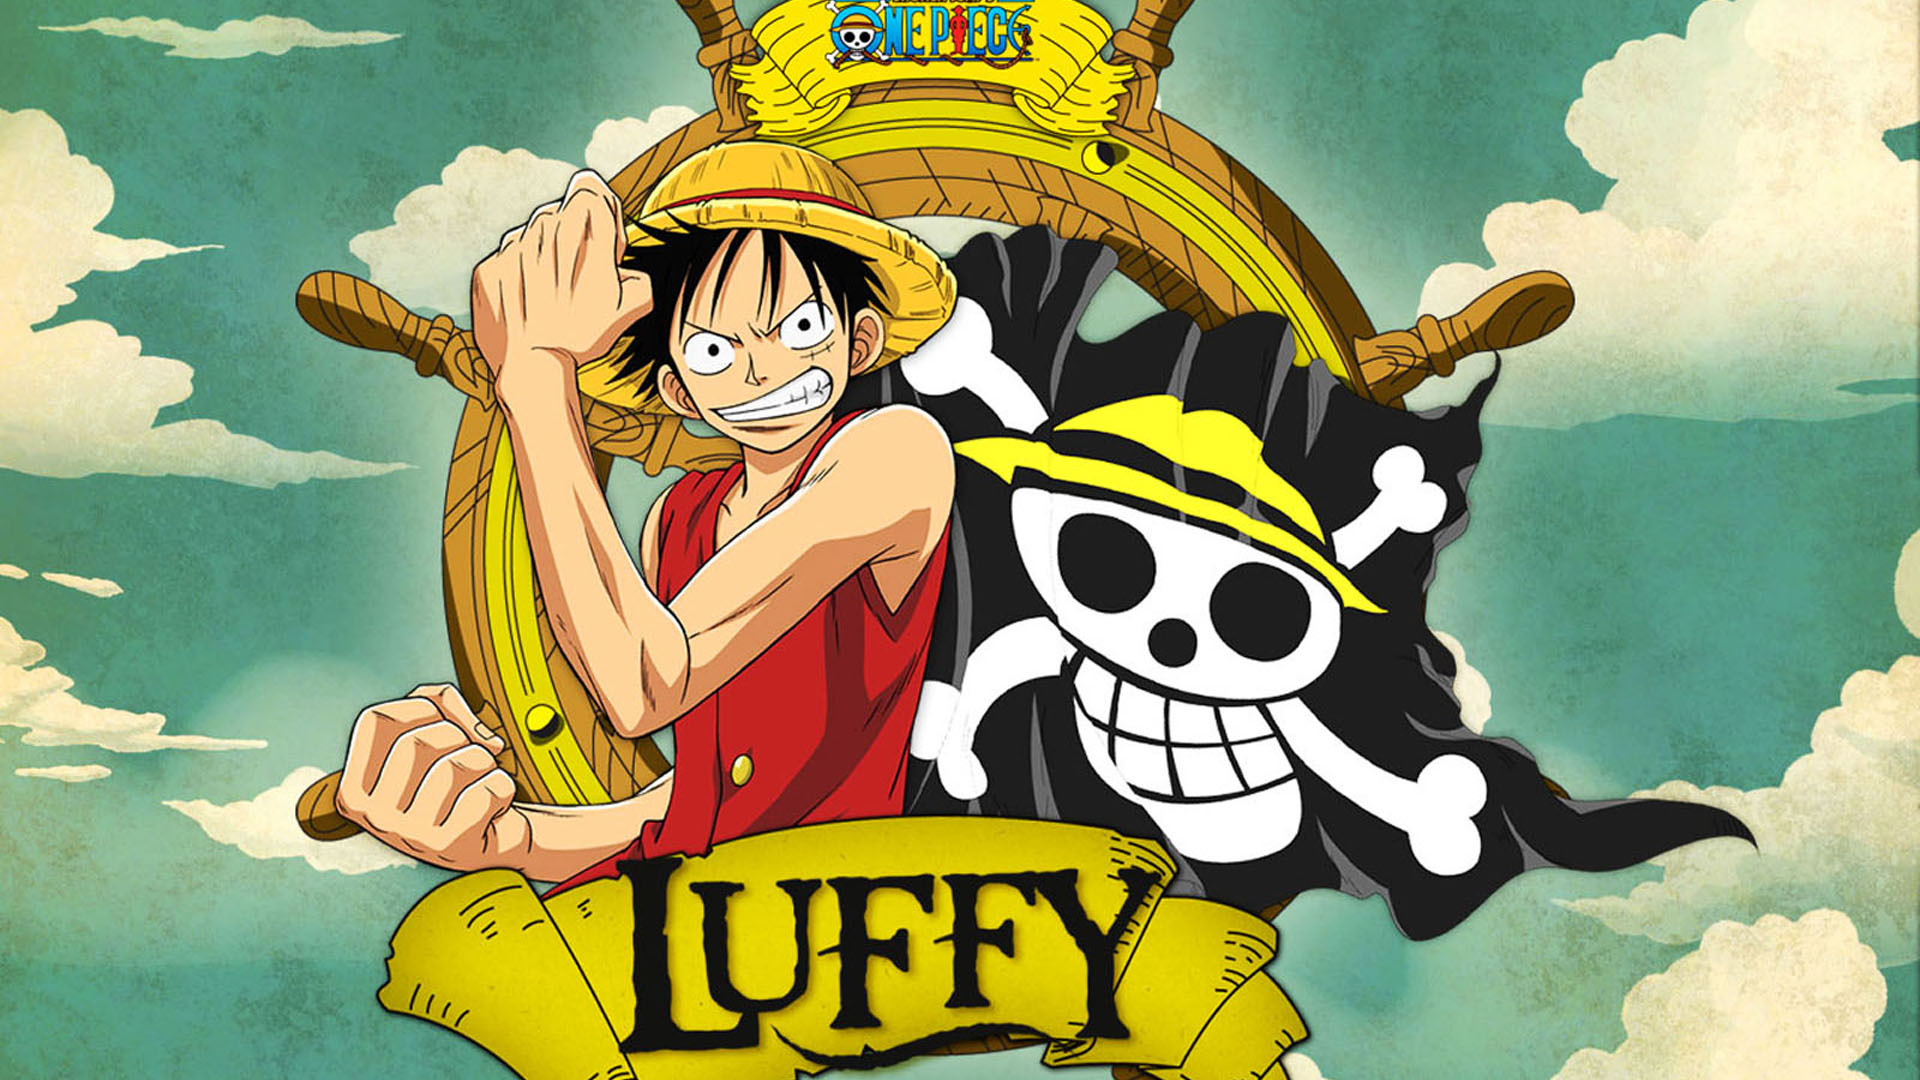 Tựa game One Piece này rất thú vị và giờ đây, bạn có thể tải về những bức hình nền tuyệt đẹp về Luffy chỉ với một cú click chuột ngay trên brothersoft com. Trong đó, Luffy wallpaper 116029 là một lựa chọn tuyệt vời để trang trí cho màn hình của bạn đấy!